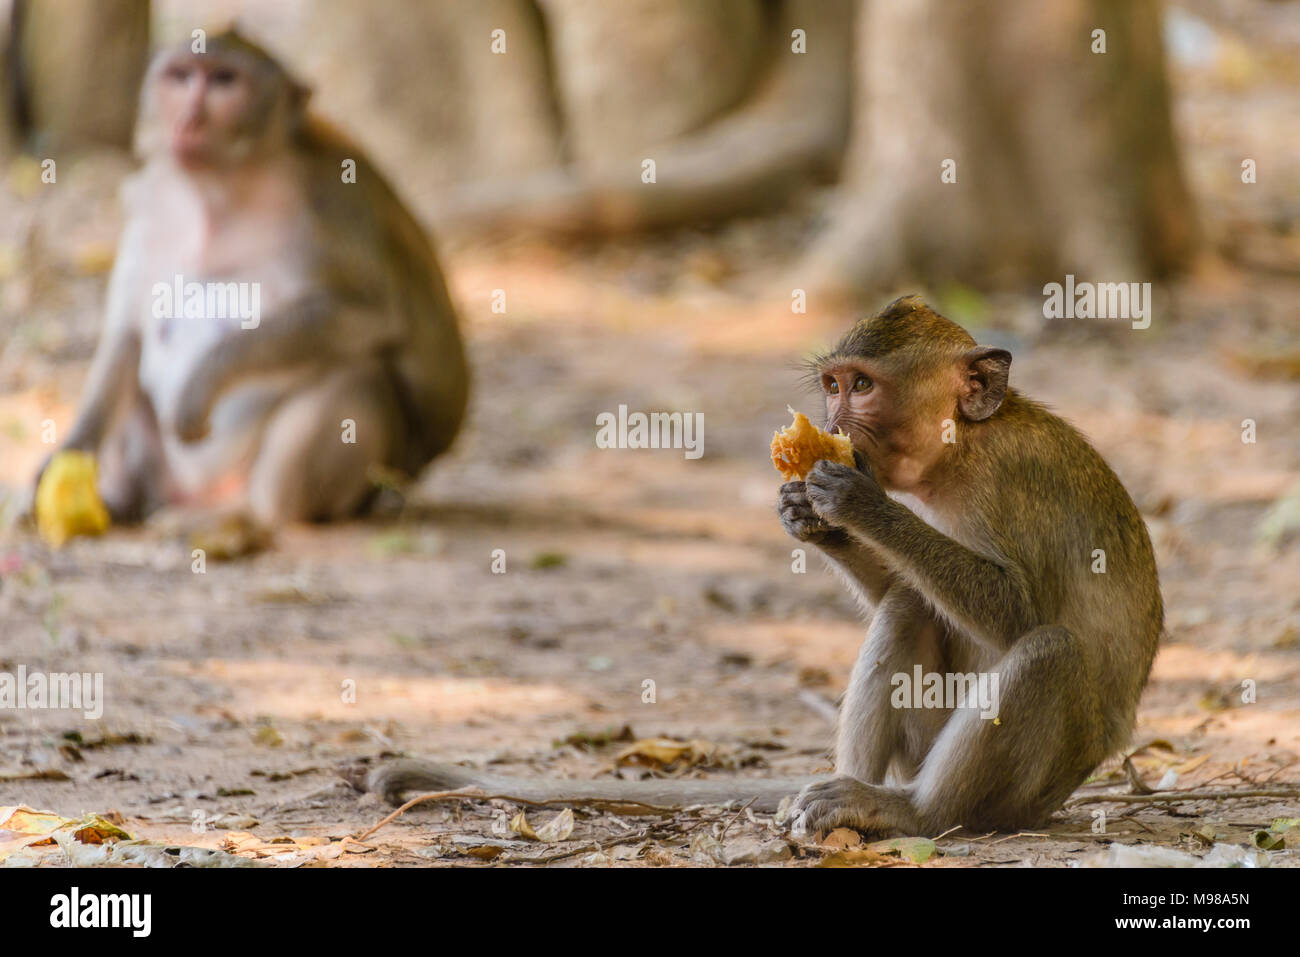 Jeune singe mangeant une macquaqe mango laissés par les touristes, Siem Reap, Cambodge Banque D'Images